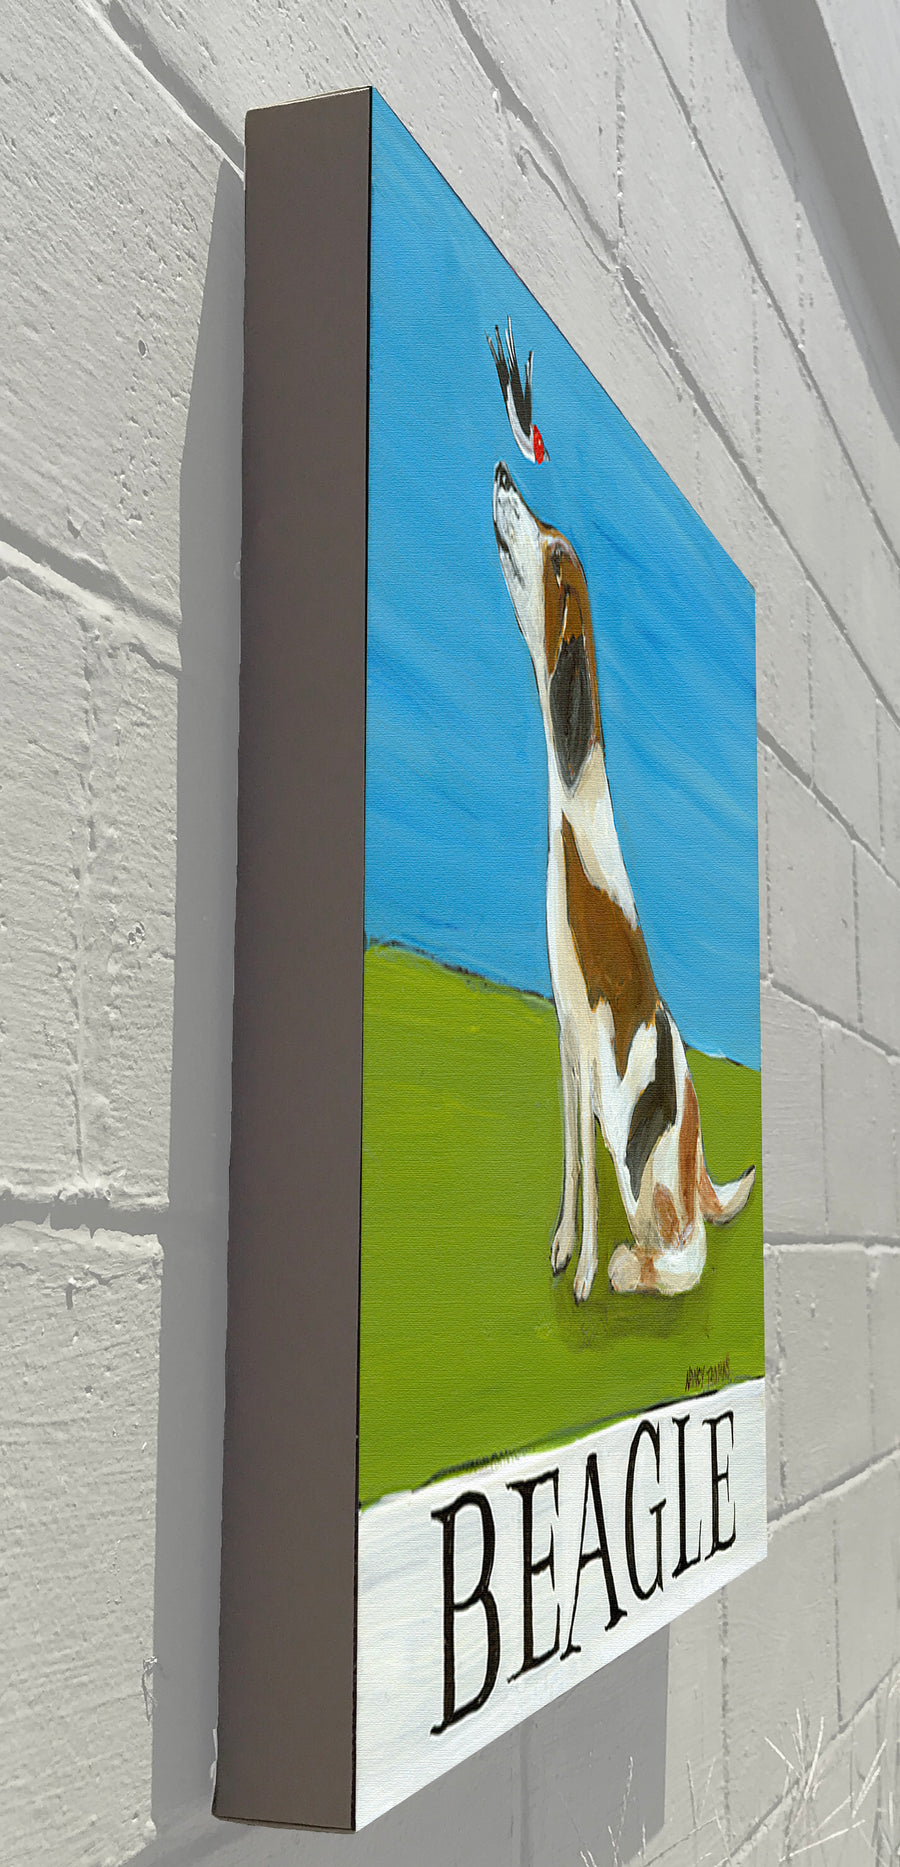 Gallery Grand - Doggie - Beagle